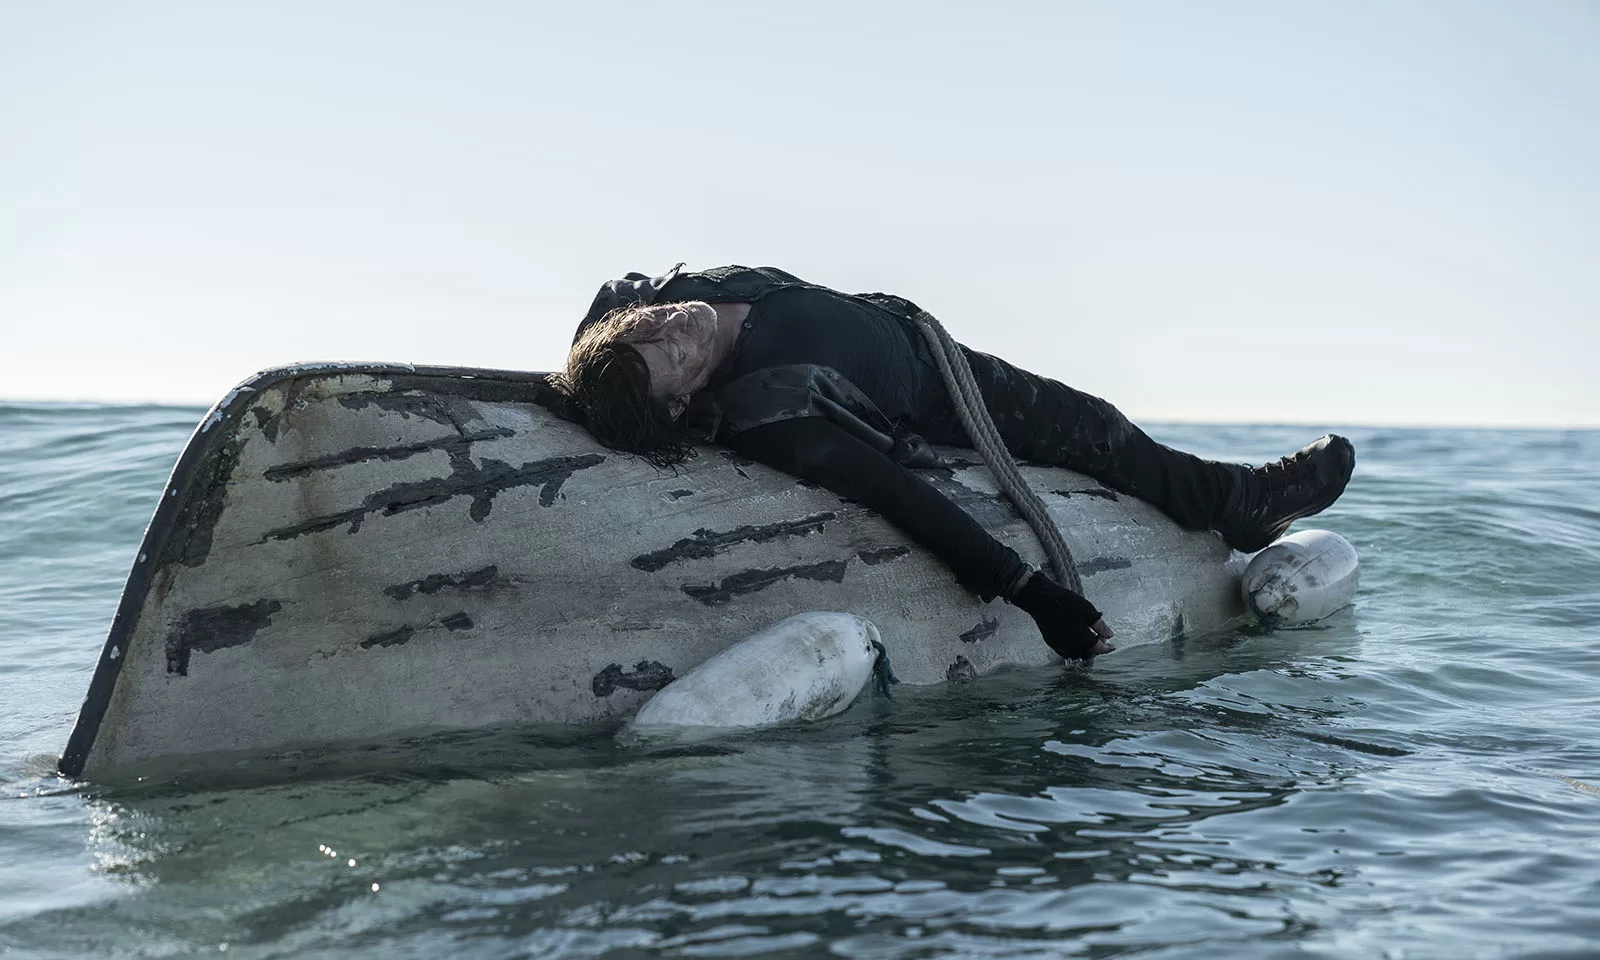 Daryl amarrado em um barco salva-vidas em cena do Episódio 1 de The Walking Dead: Daryl Dixon.